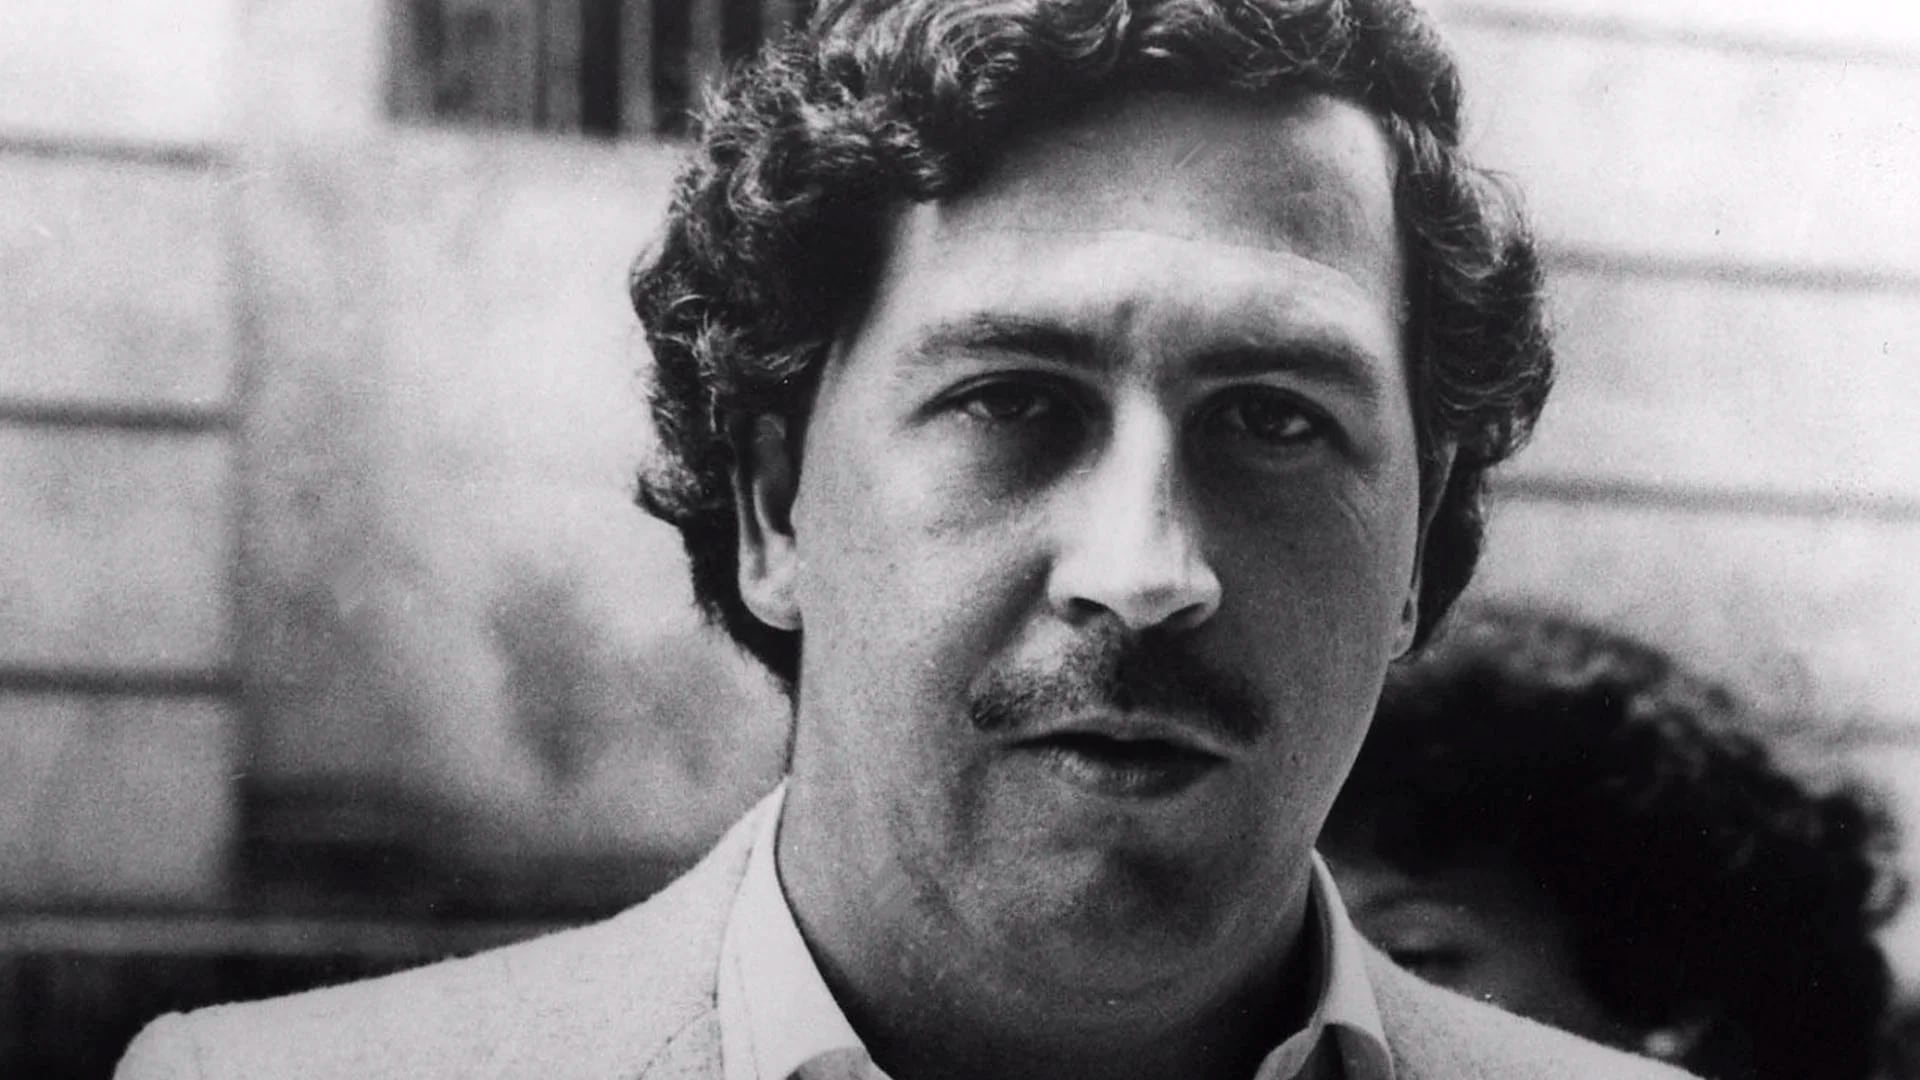 Pablo Escobar Gaviria estuvo en la lista de los más ricos del mundo de la revista Forbes. Murió en Medellín el 2 de diciembre de 1993, un día después de haber cumplido 44 años